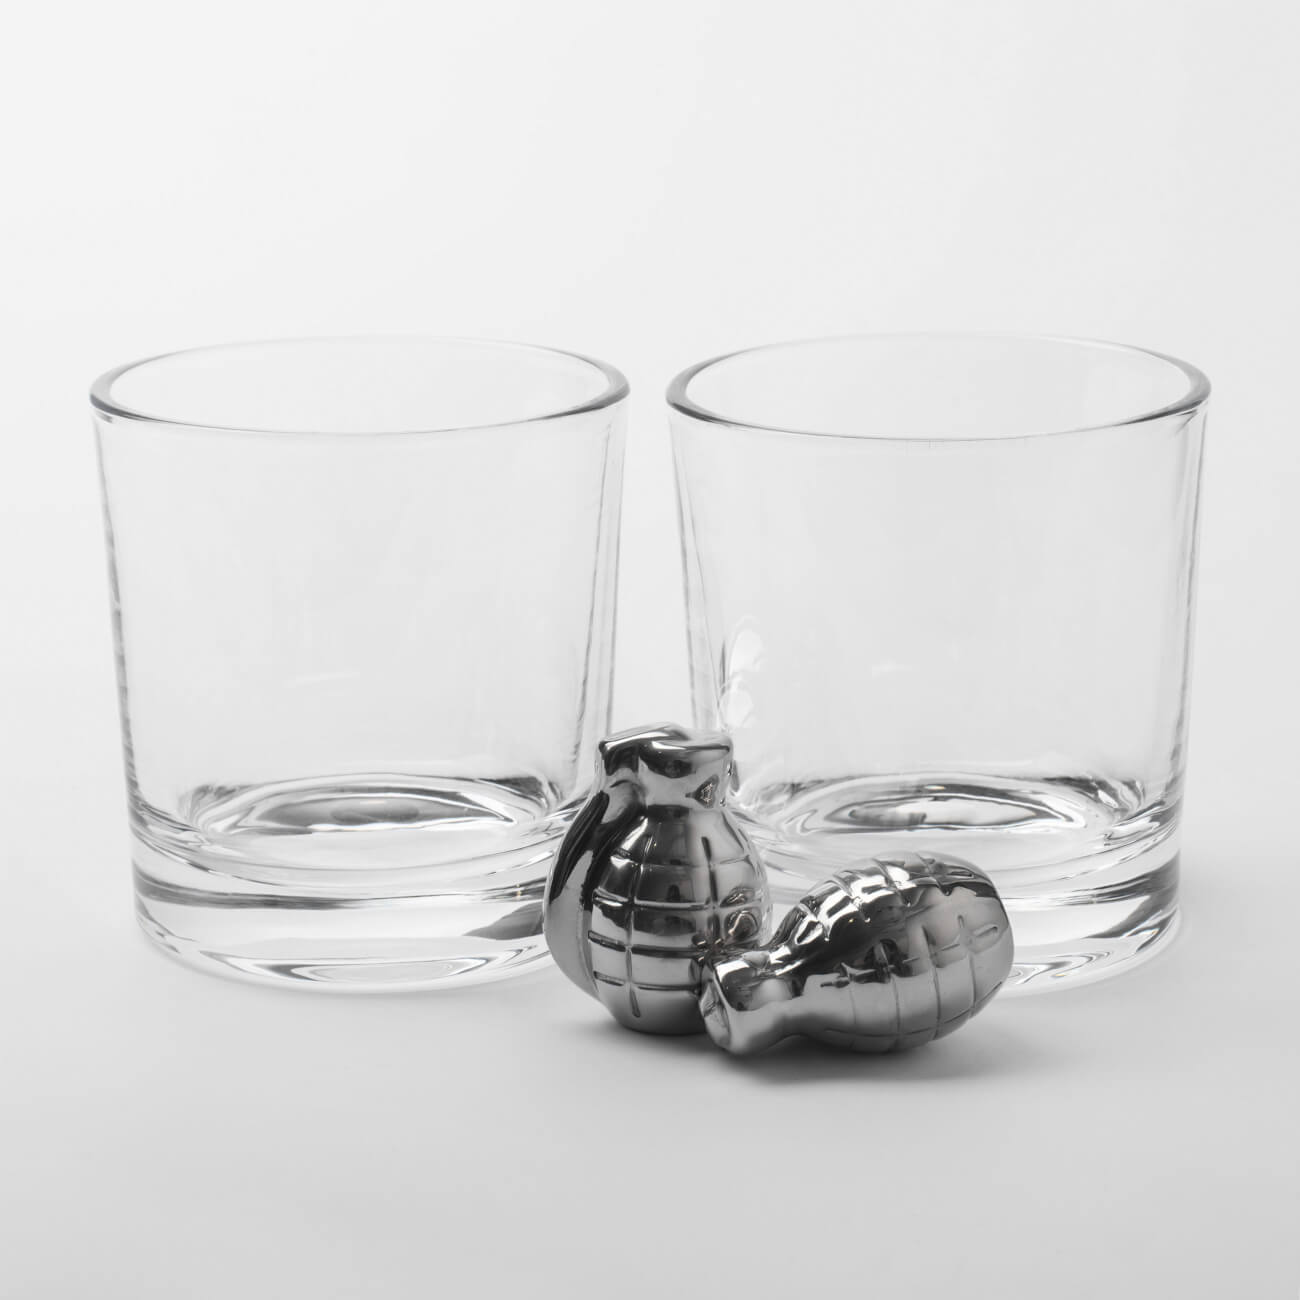 Набор для виски, 2 перс, 4 пр, стаканы/кубики, стекло/сталь, Граната, Bullet